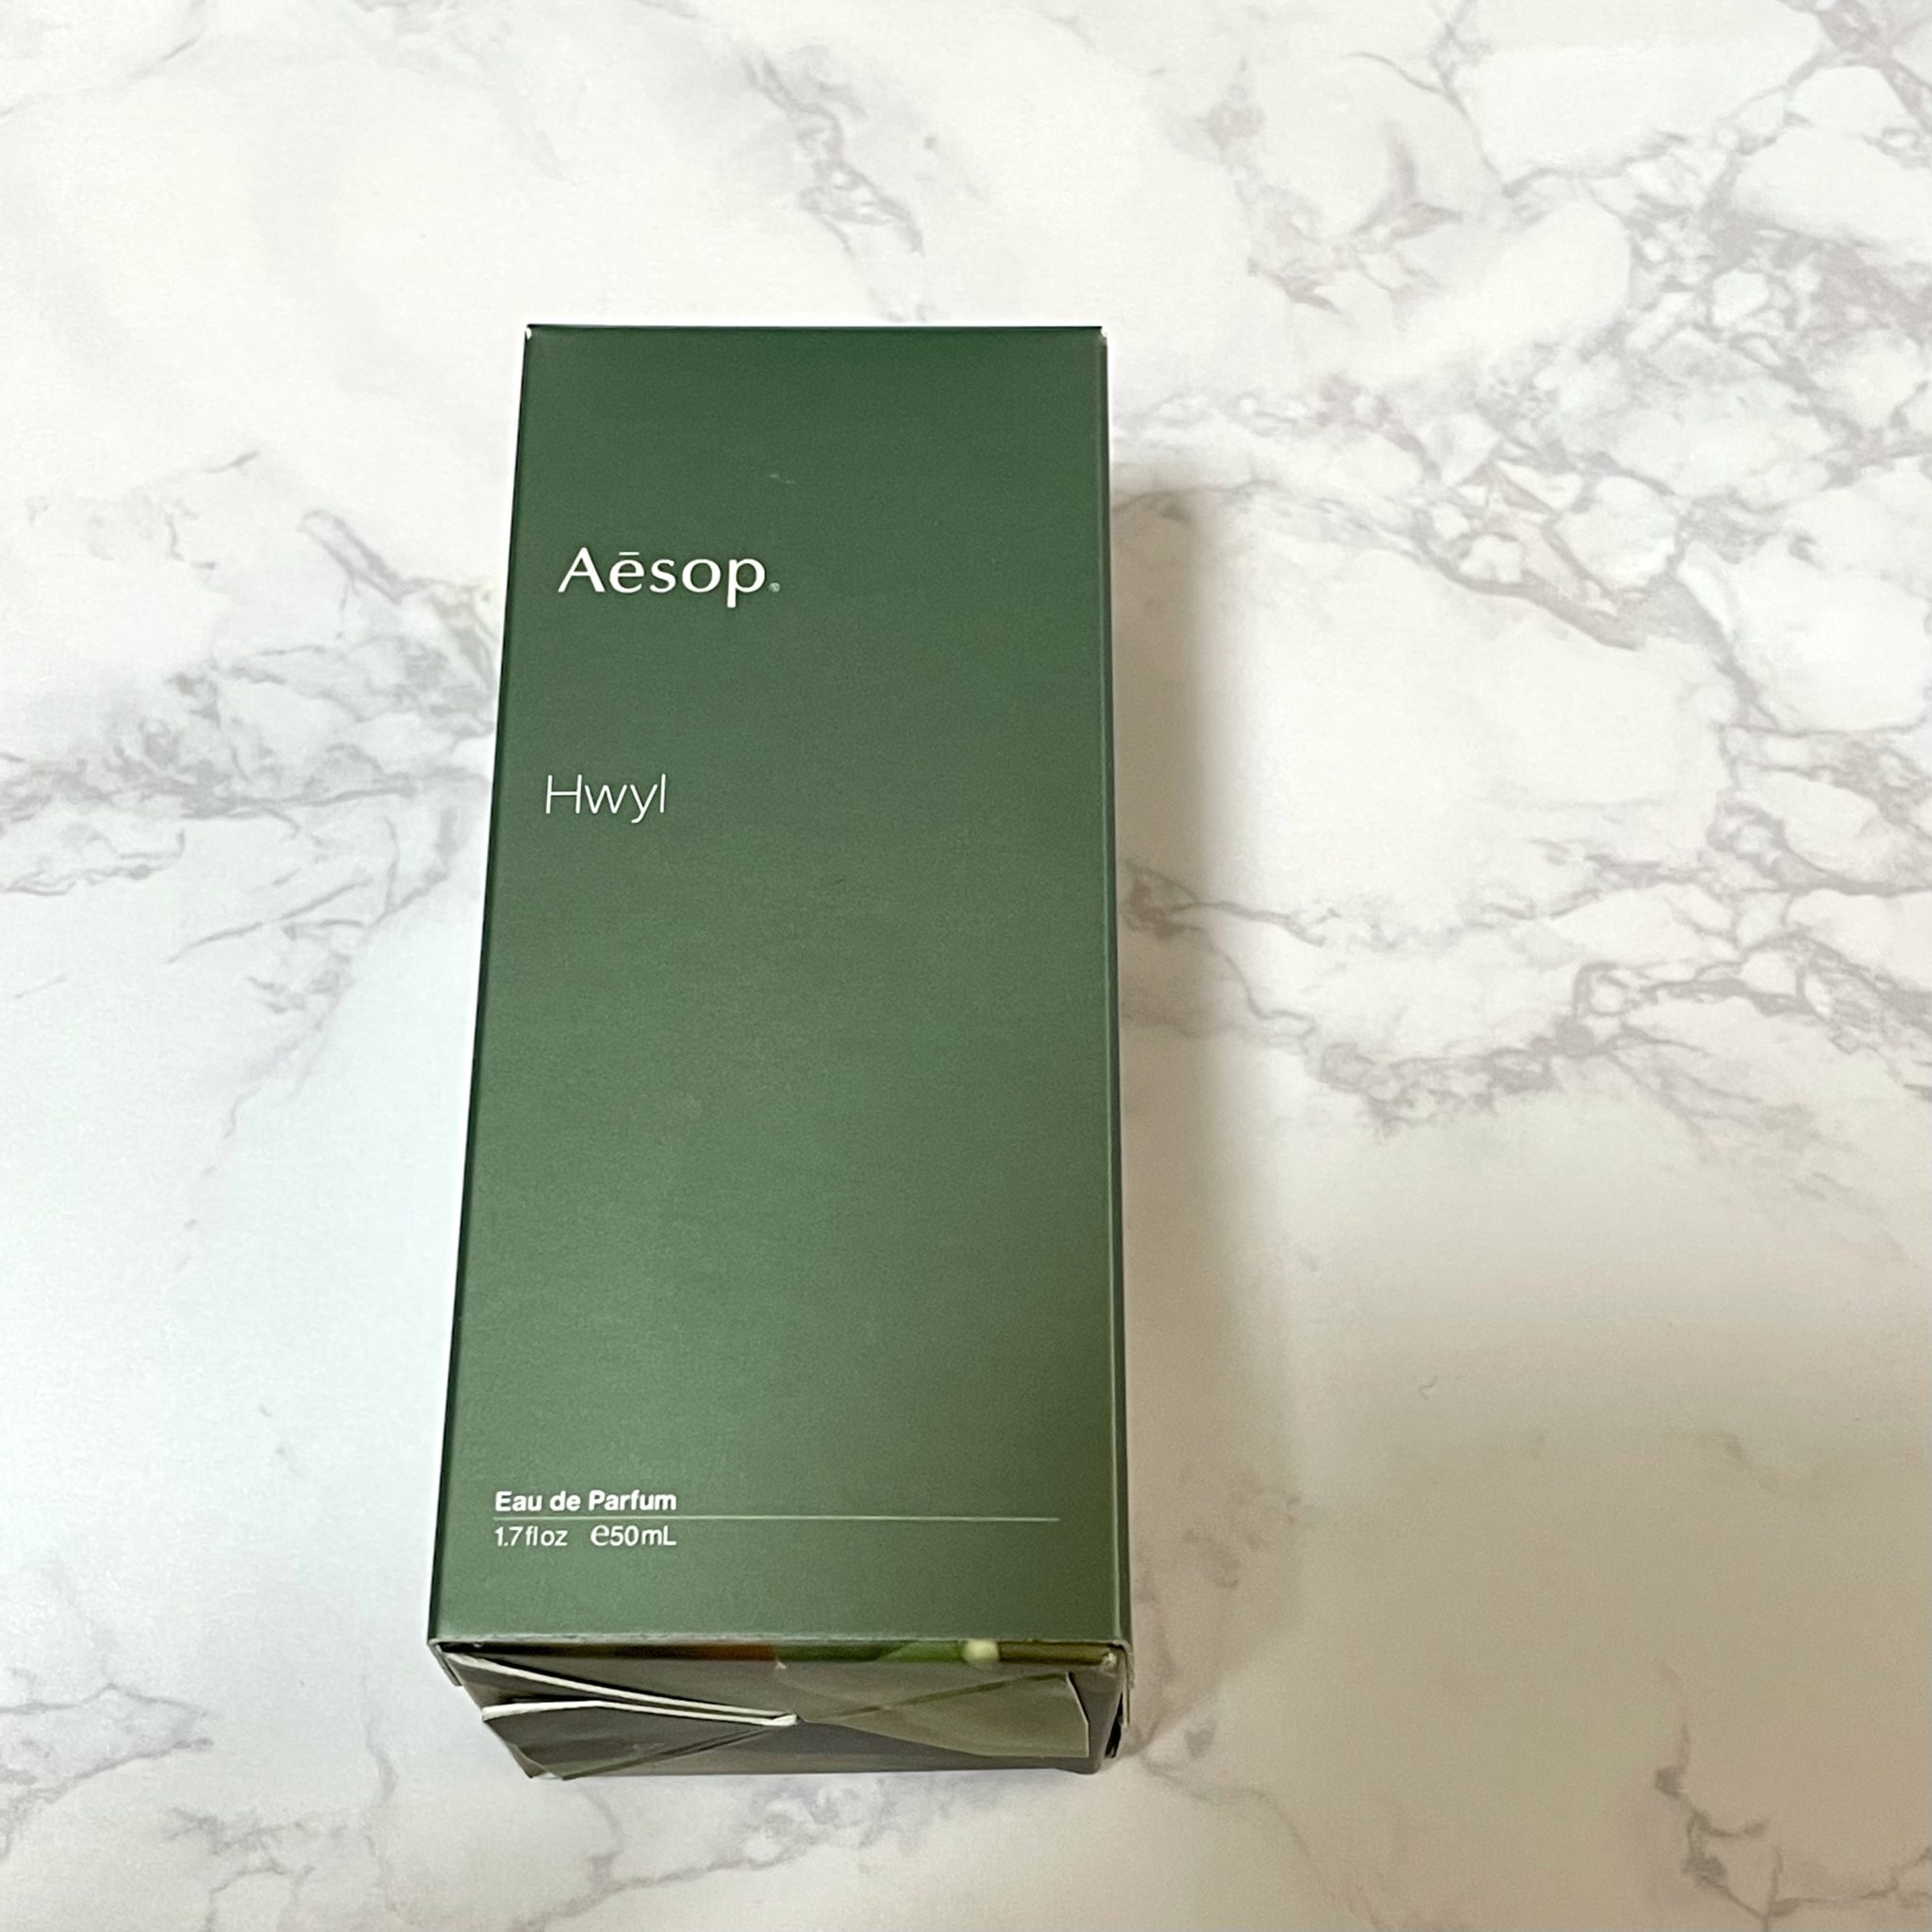 Aesop - Aesop hwyl ヒュイル 香水 フレグランス の+spbgp44.ru